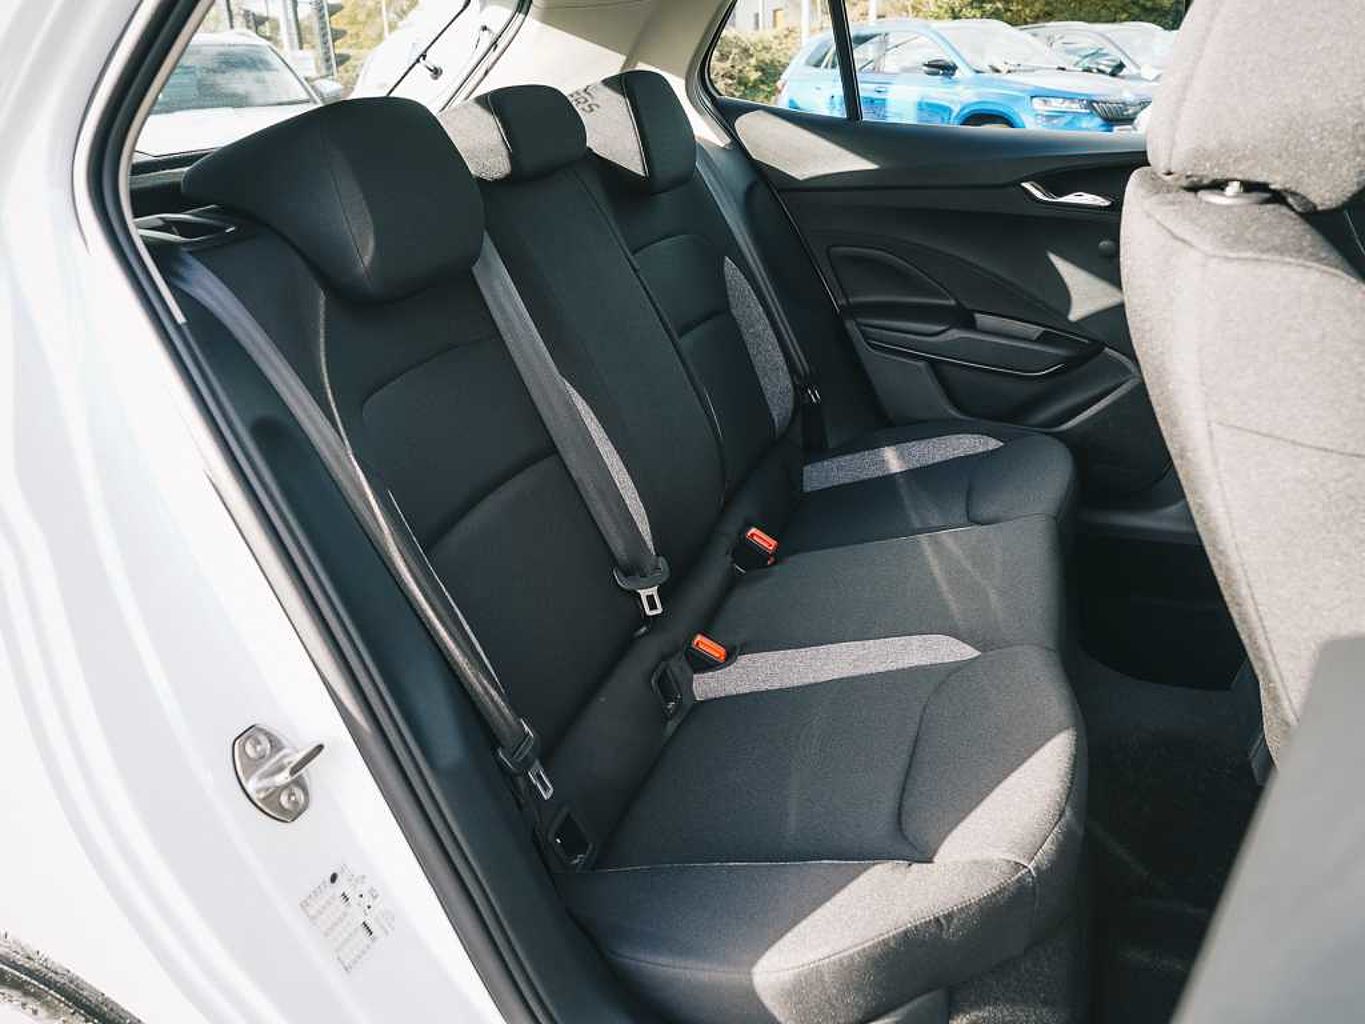 SKODA Fabia 1.0 MPI (80ps) SE Comfort 5-Dr Hatchback